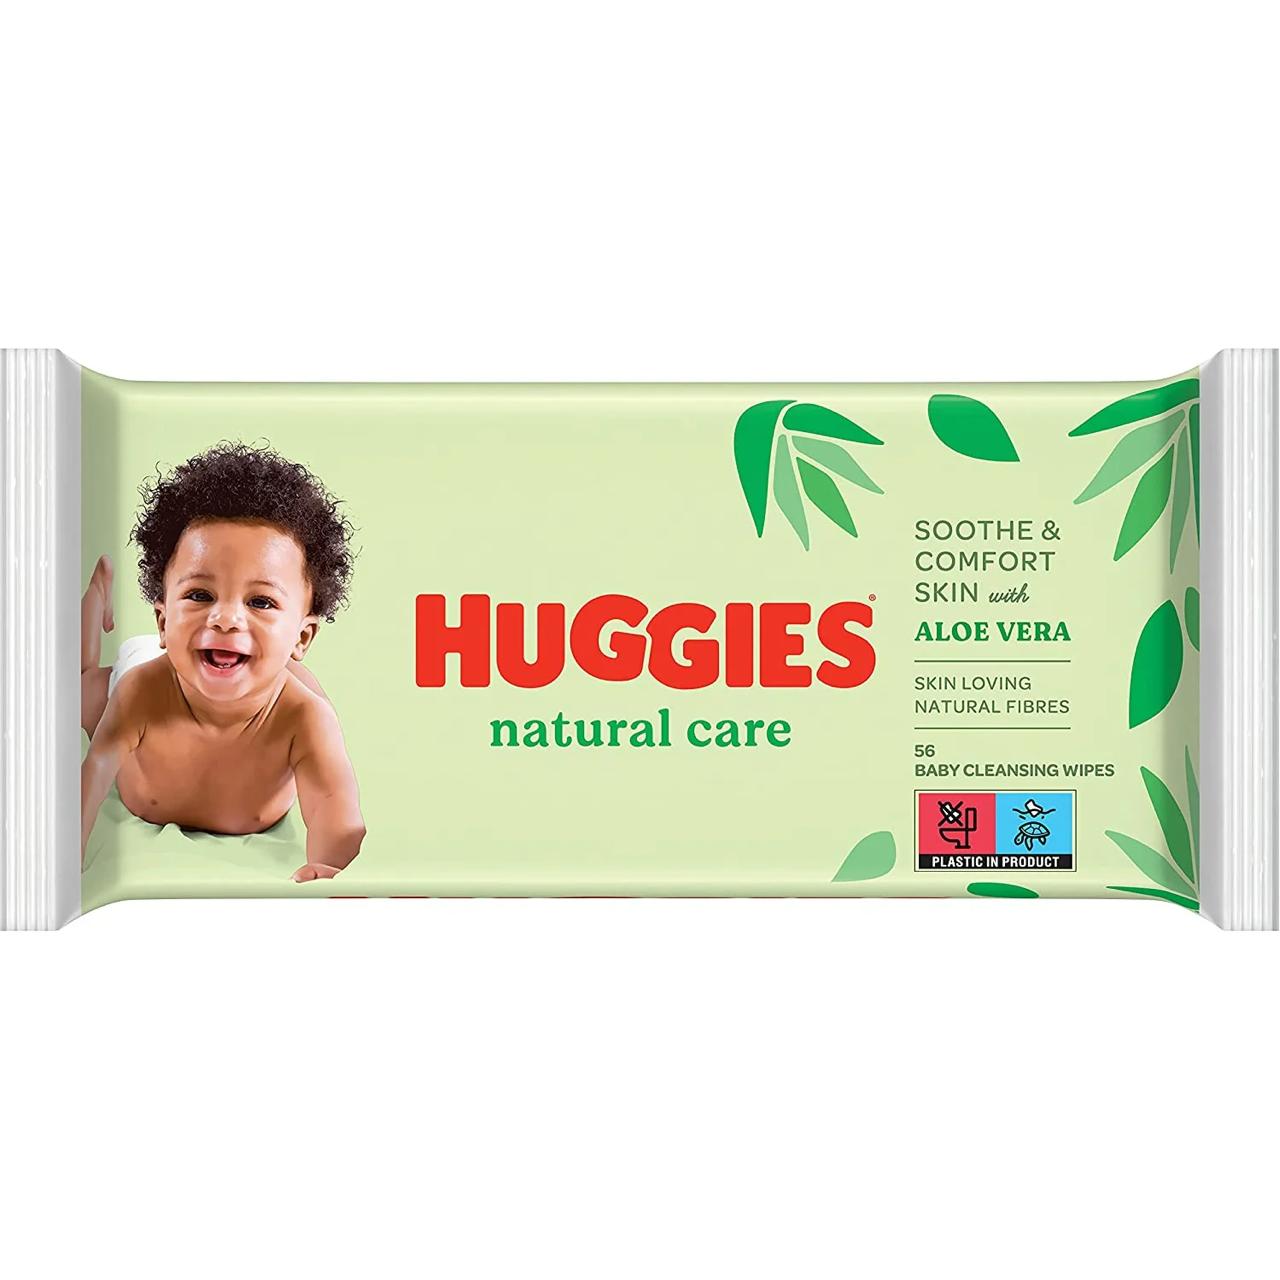 HUGGIES Lingettes Natural Care à l’aloe vera - 56 Pièces